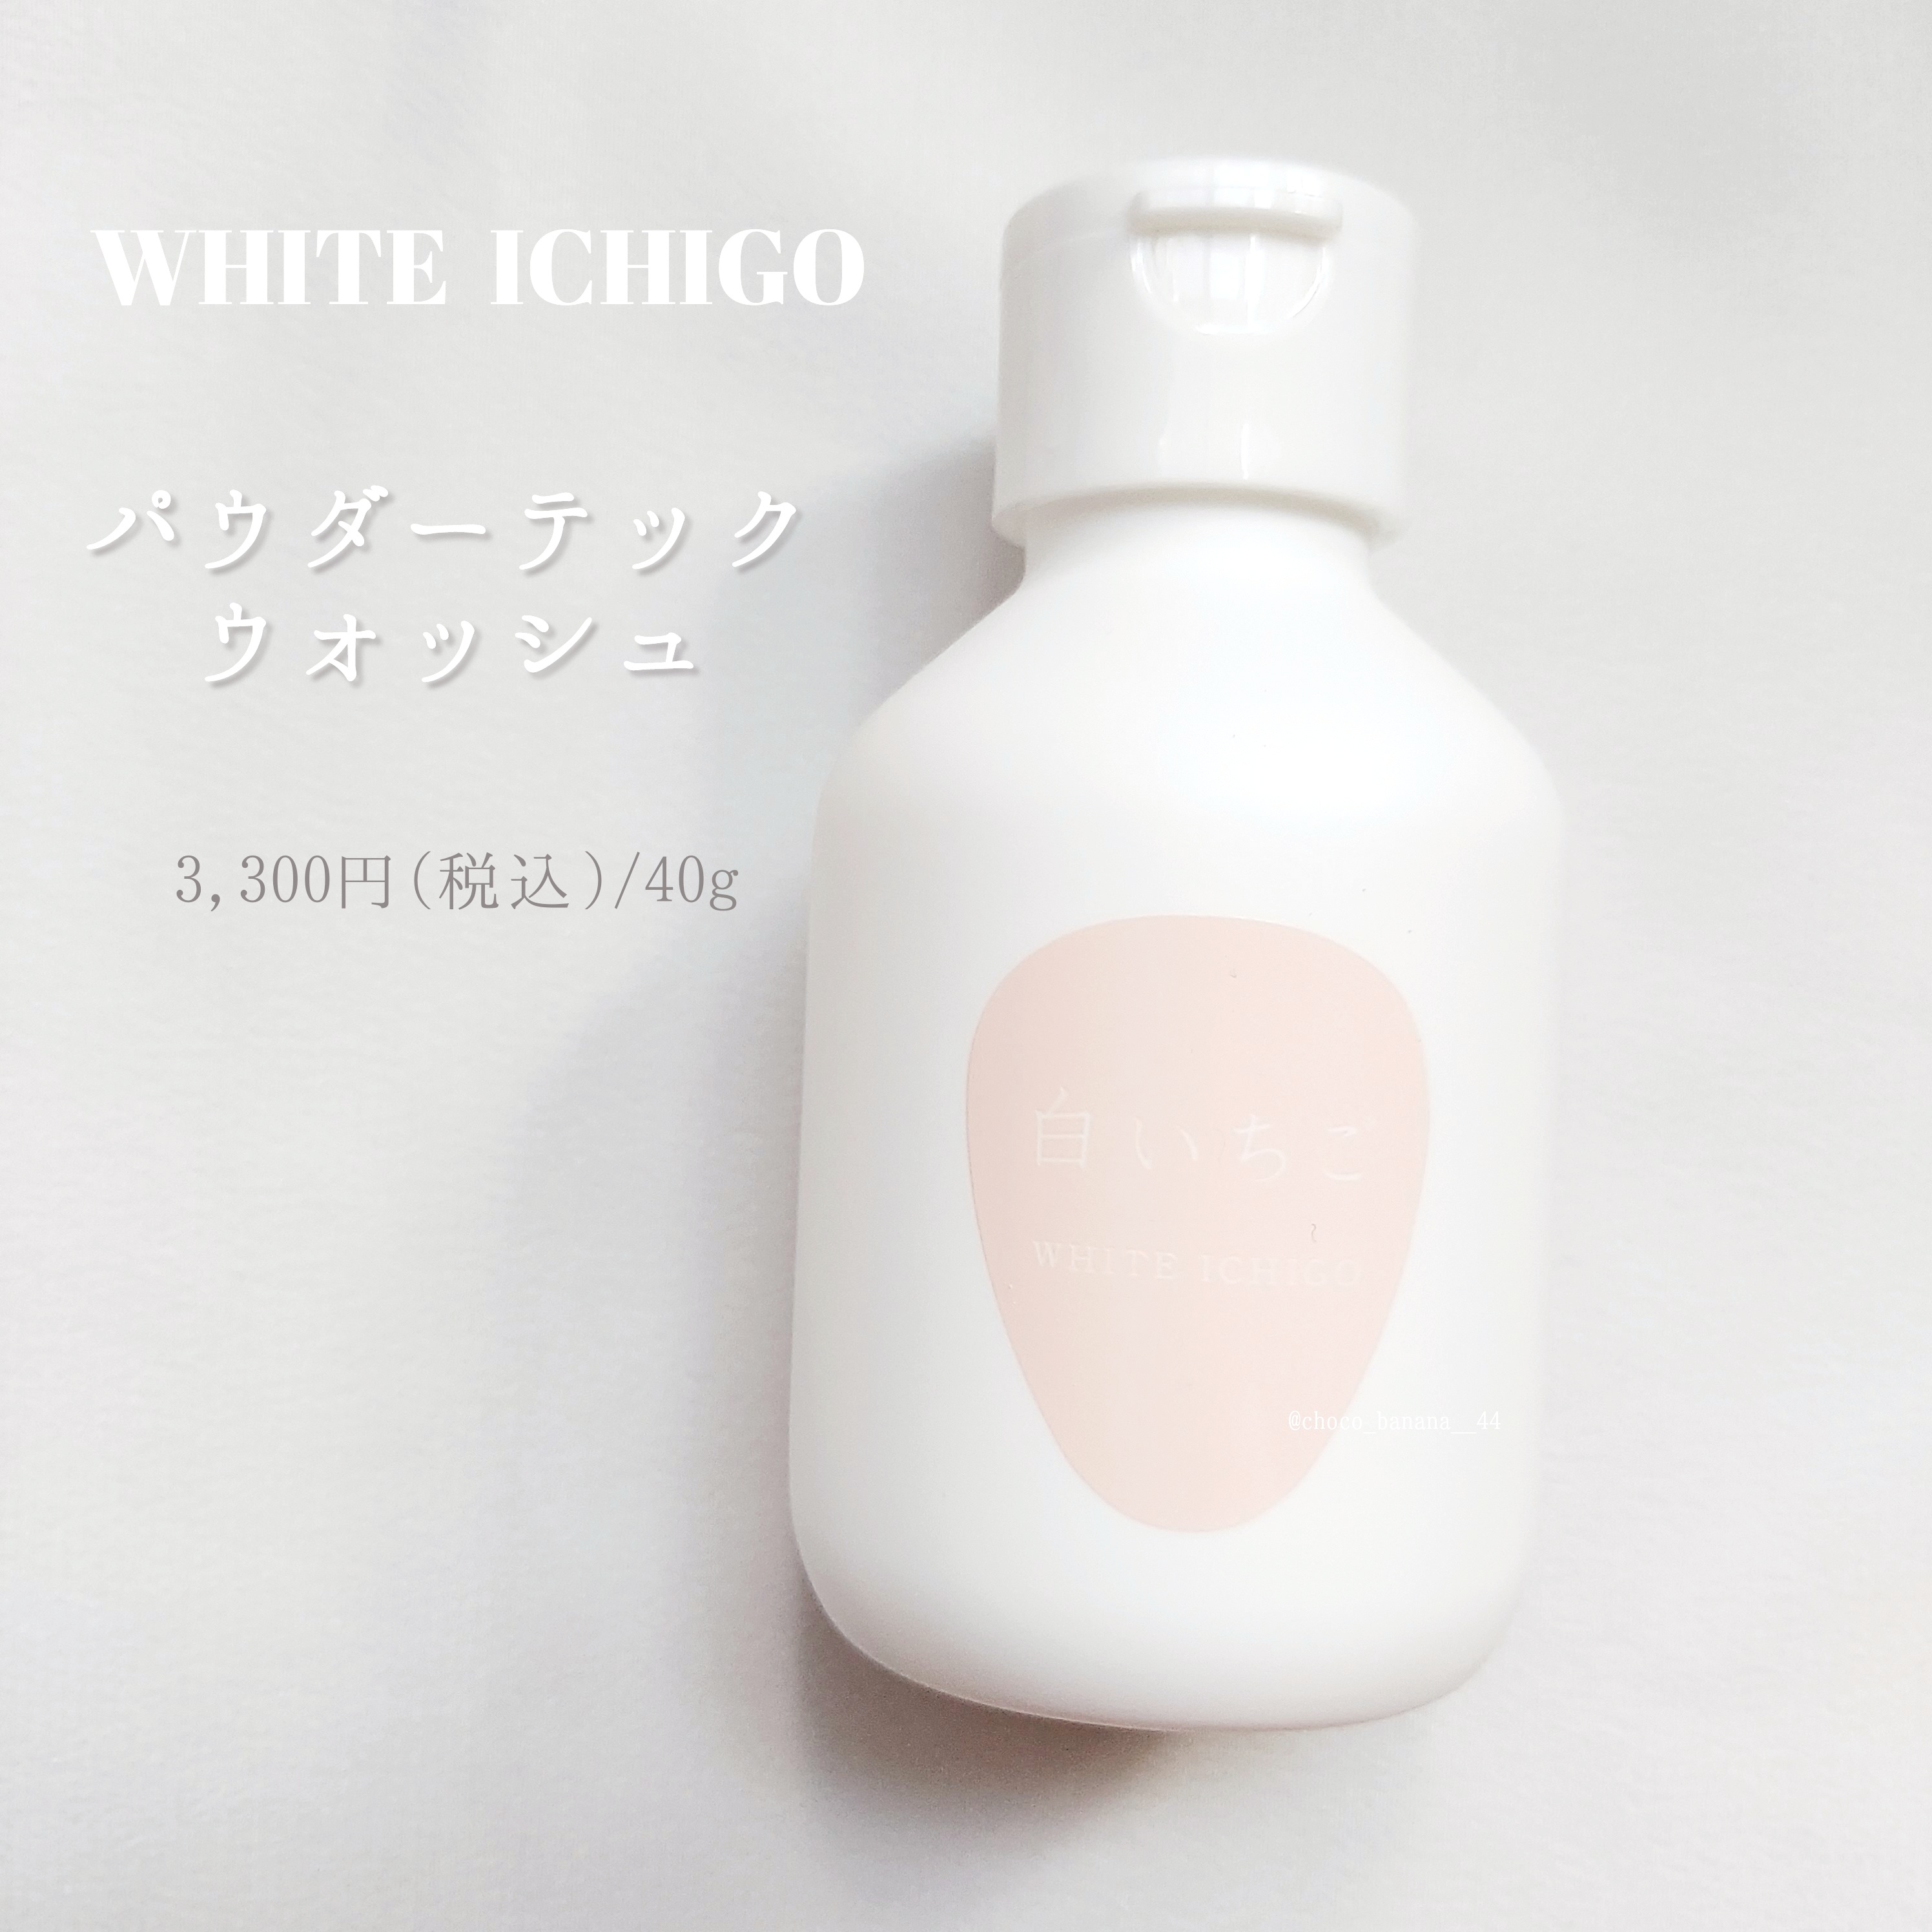 WHITE ICHIGO(ホワイトイチゴ) パウダー テック‐ウォッシュの良い点・メリットに関するししさんの口コミ画像2